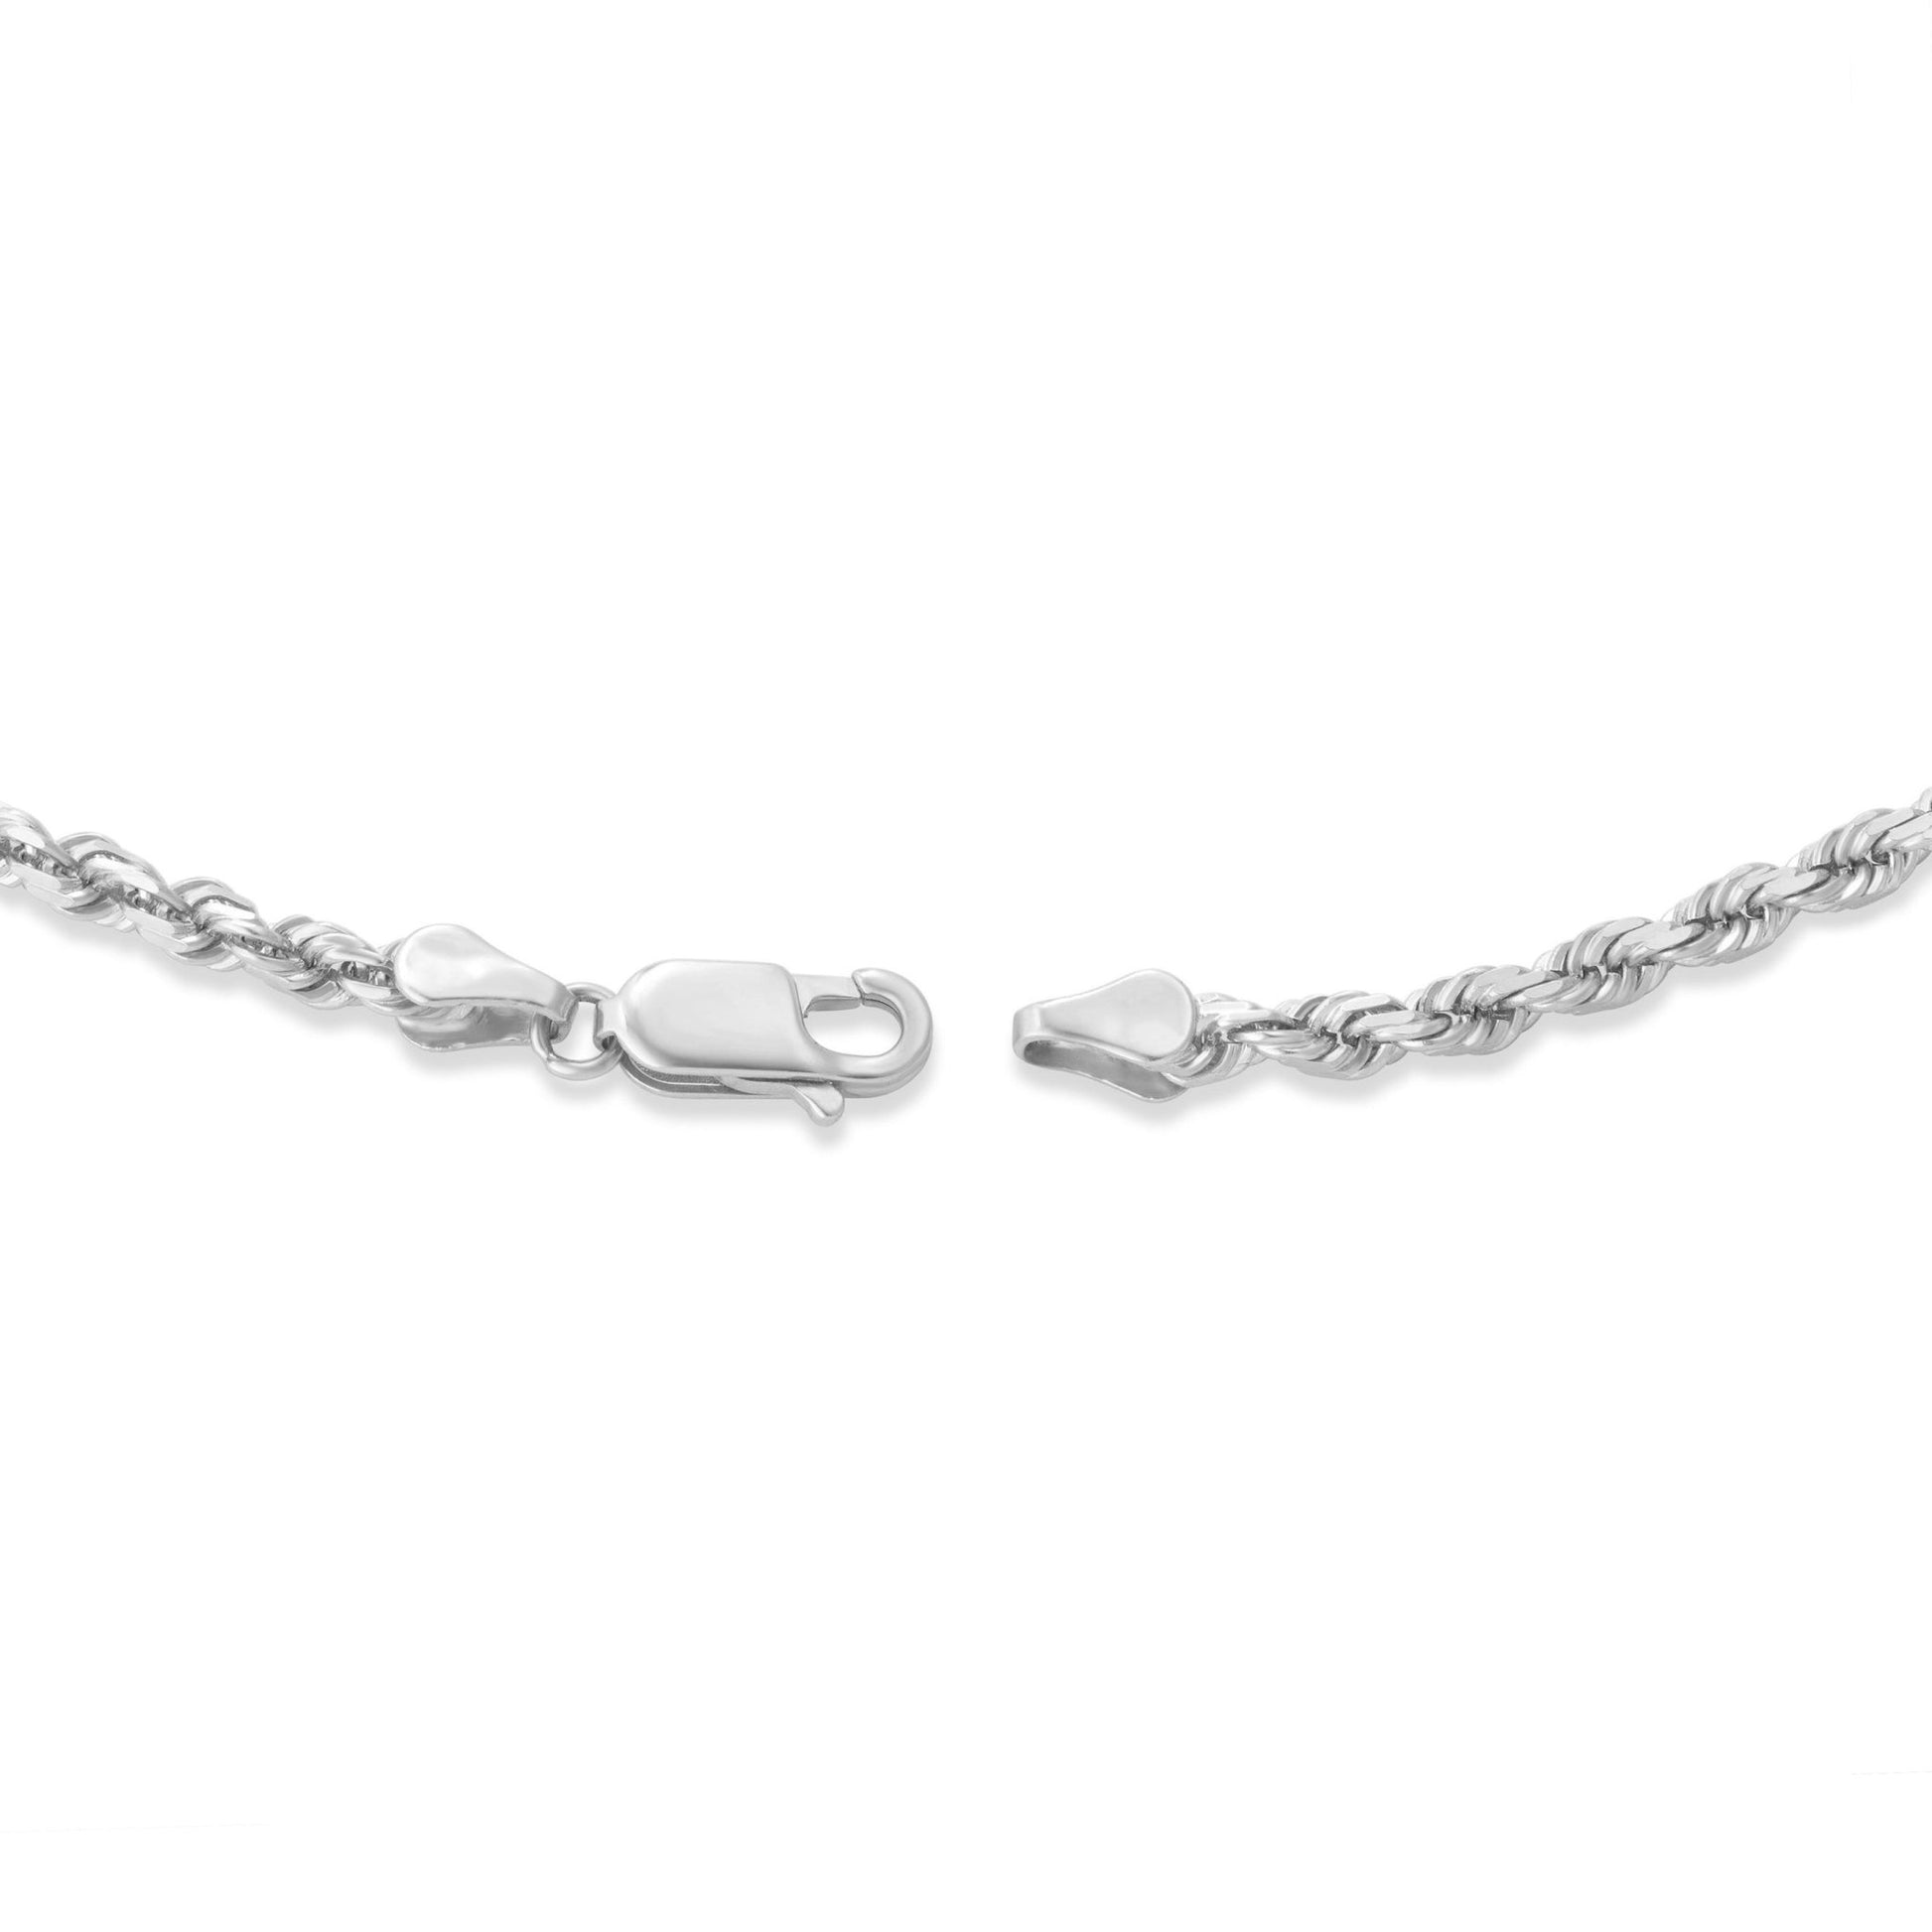 Gold Rope Chain, 3 mm - Shyne Jewelers 430-00790 10K 16 " White Gold Shyne Jewelers